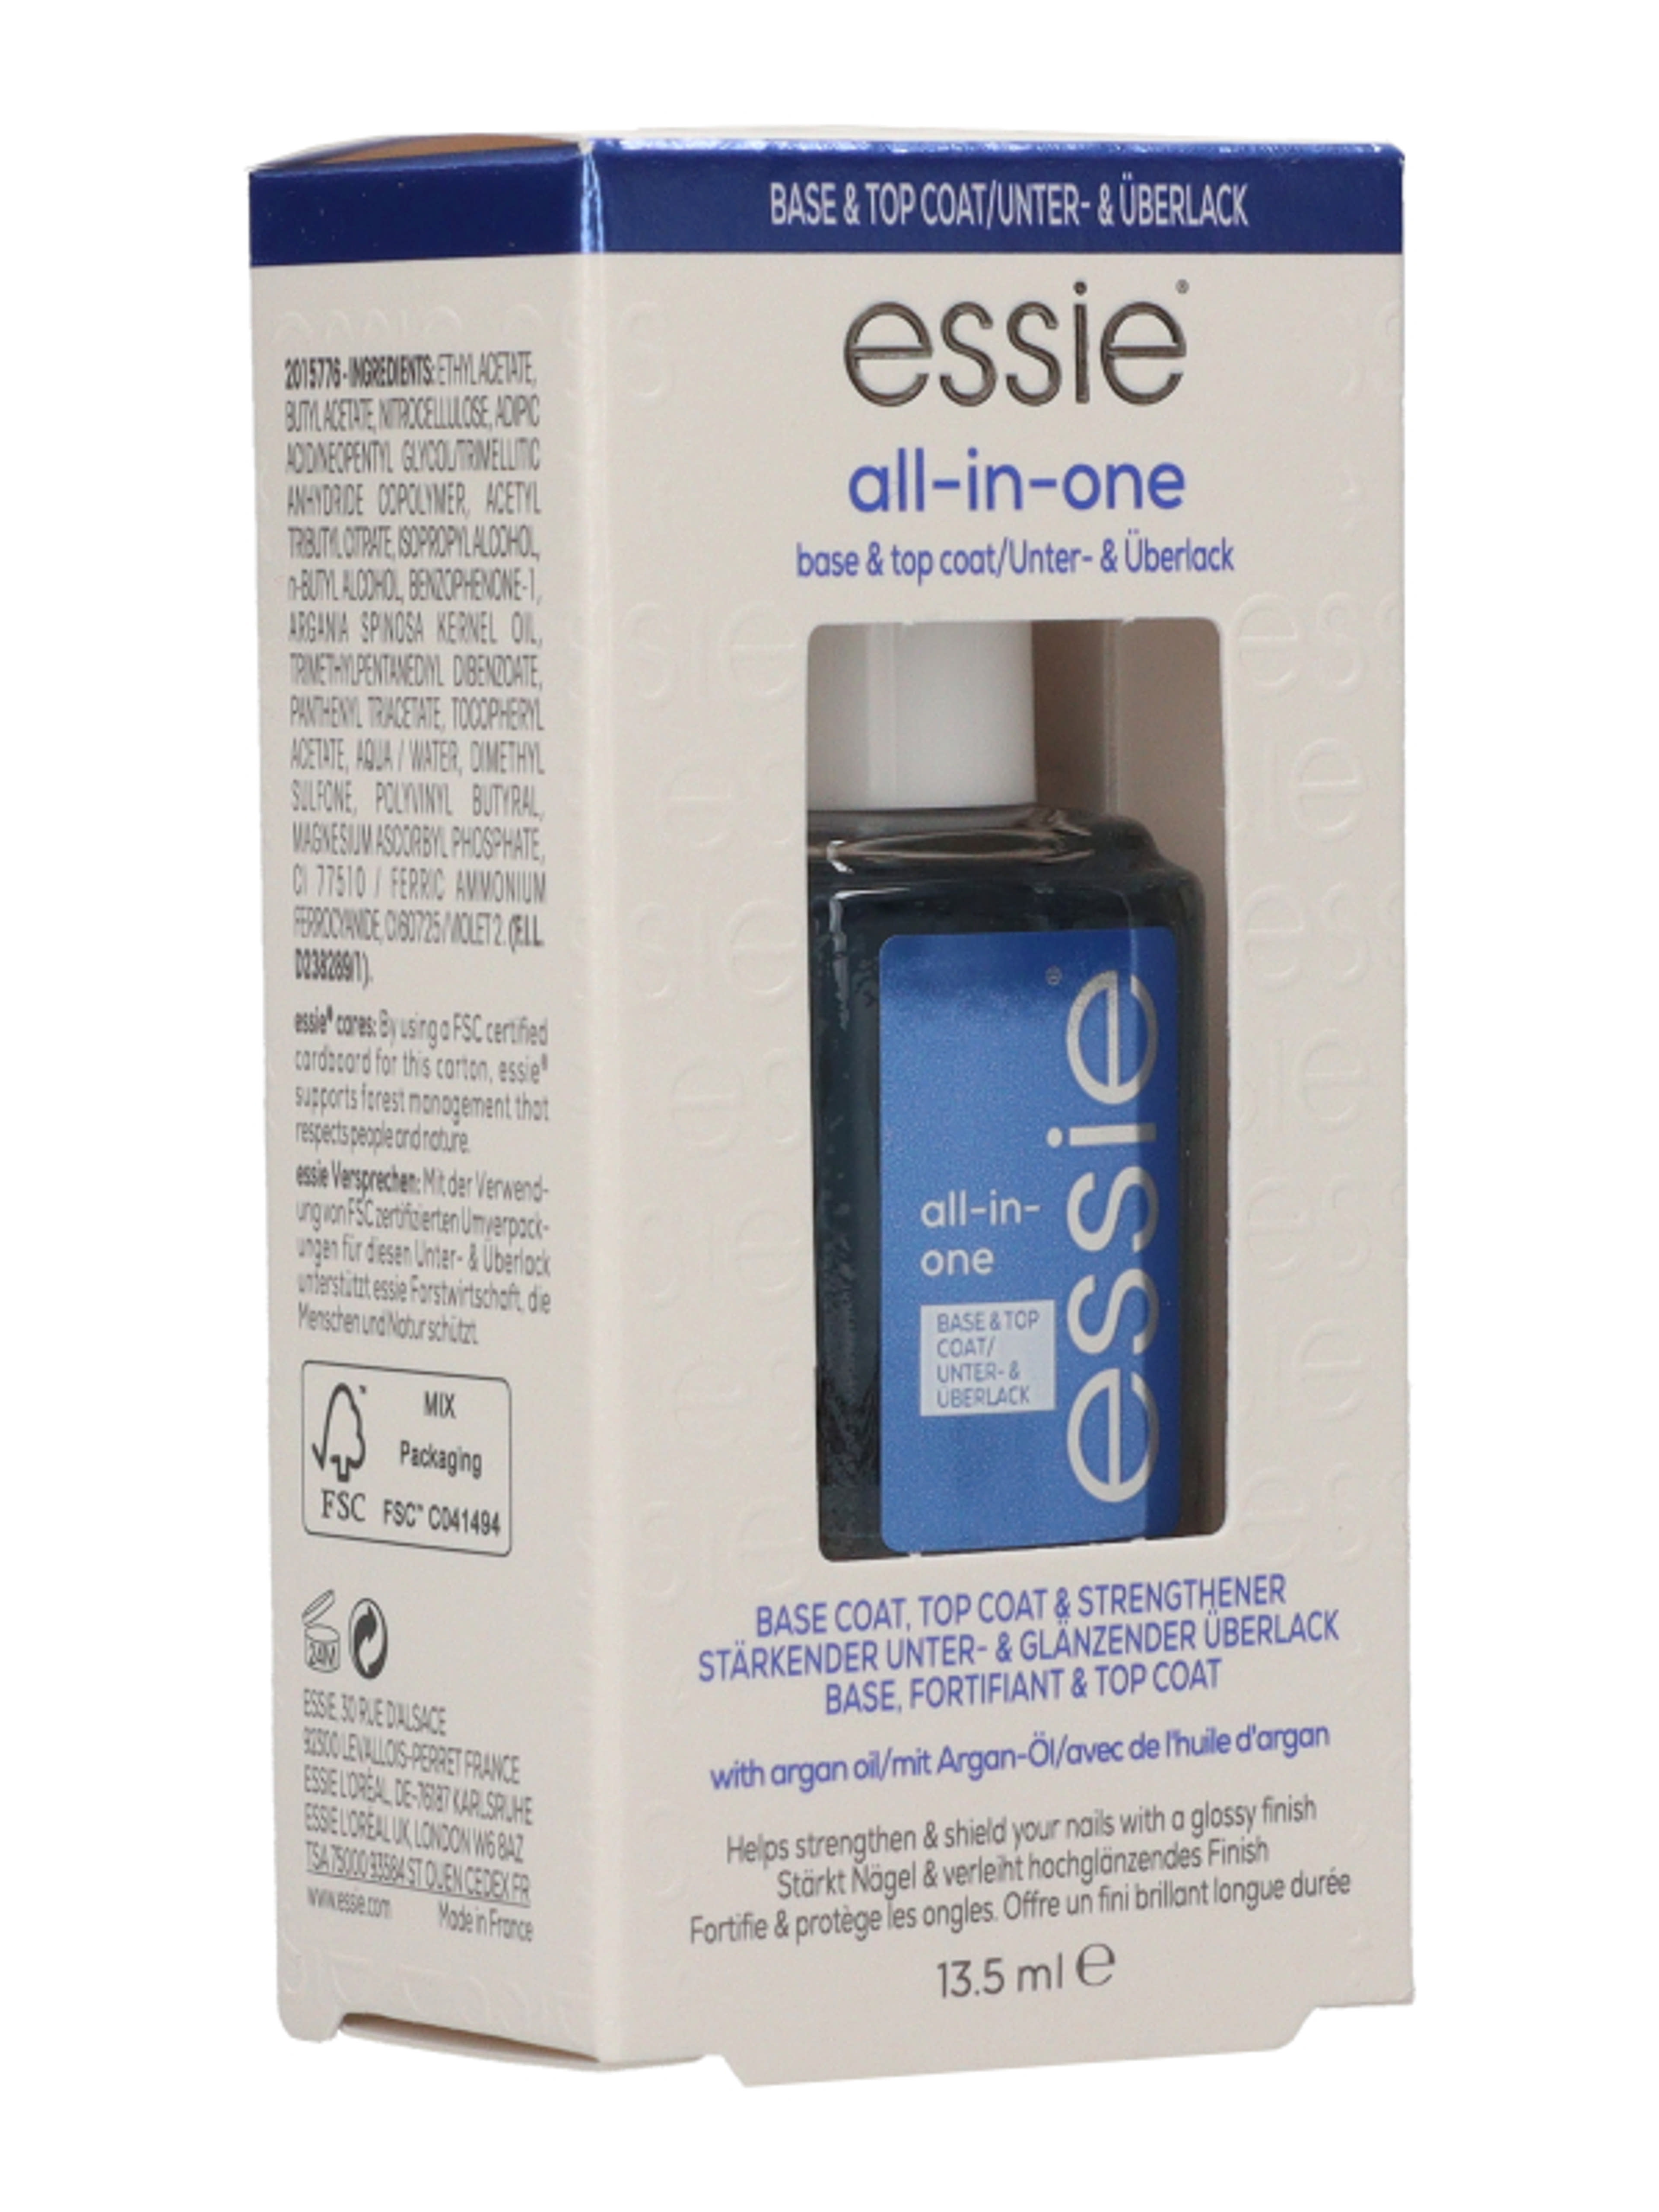 Essie Bace Coat All In One alap és fedőlakk - 1 db-5